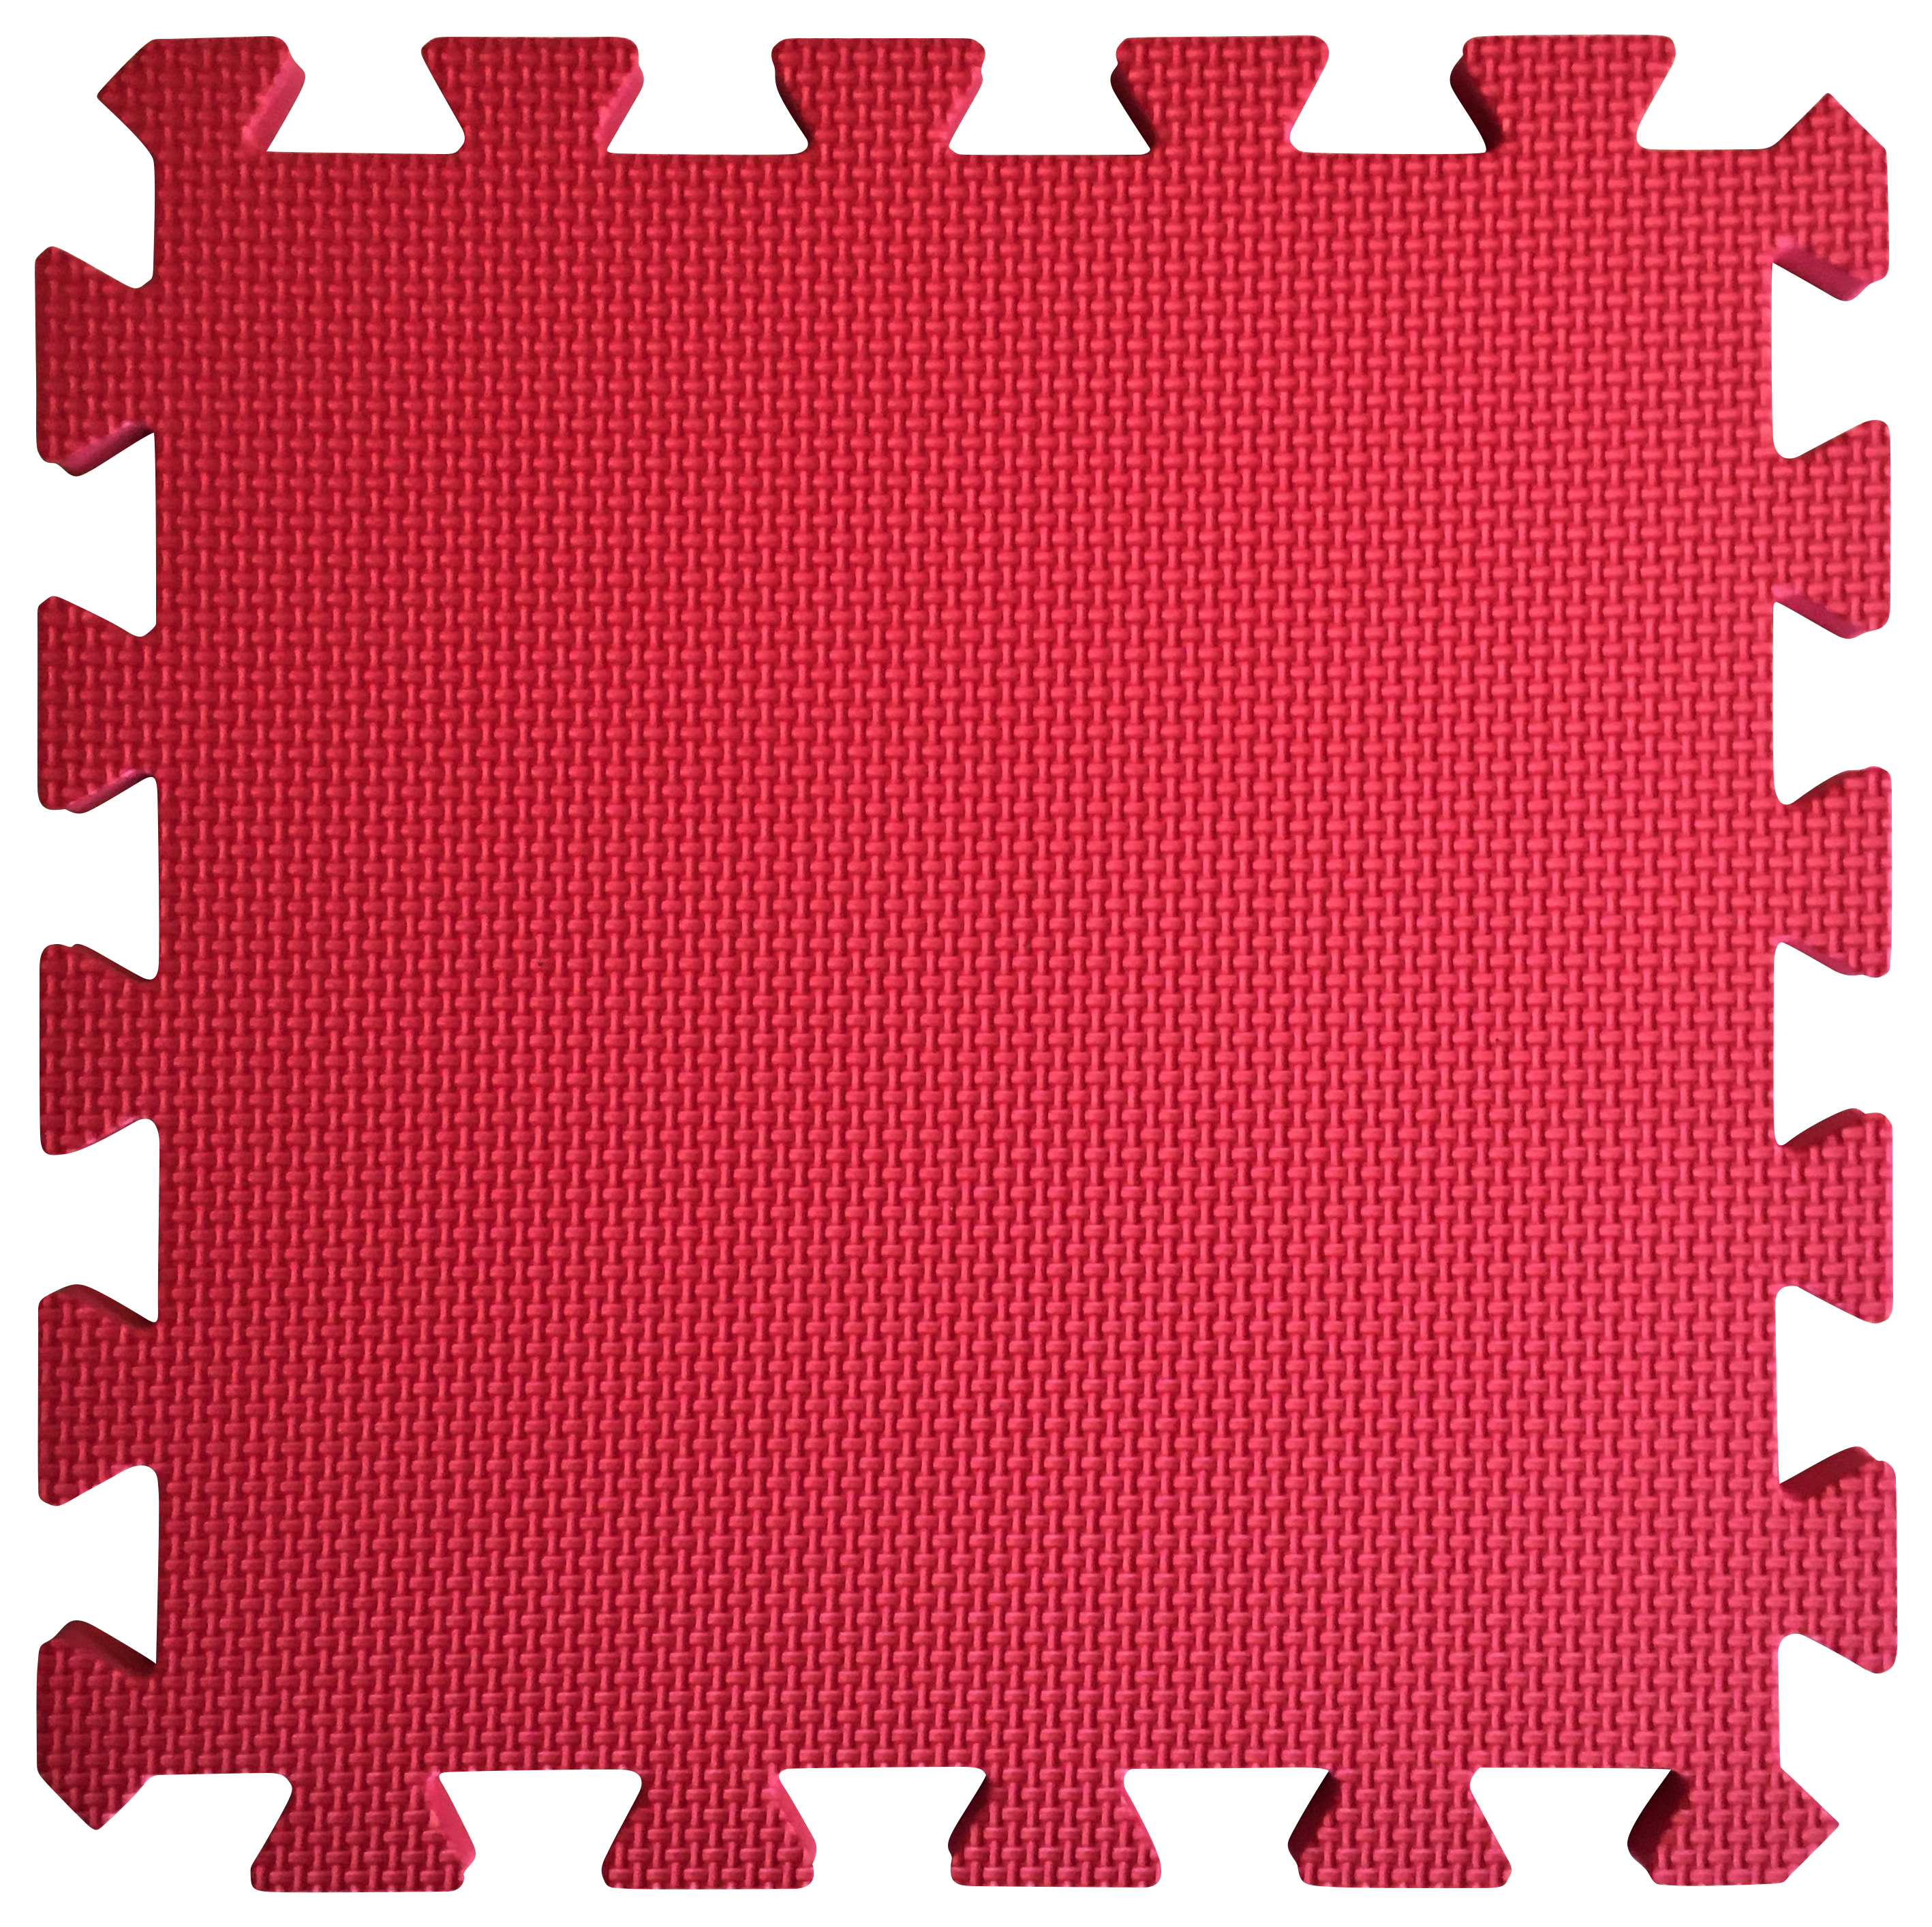 Image of Warm Floor Red Interlocking Floor Tiles for Garden Buildings - 9 x 7ft